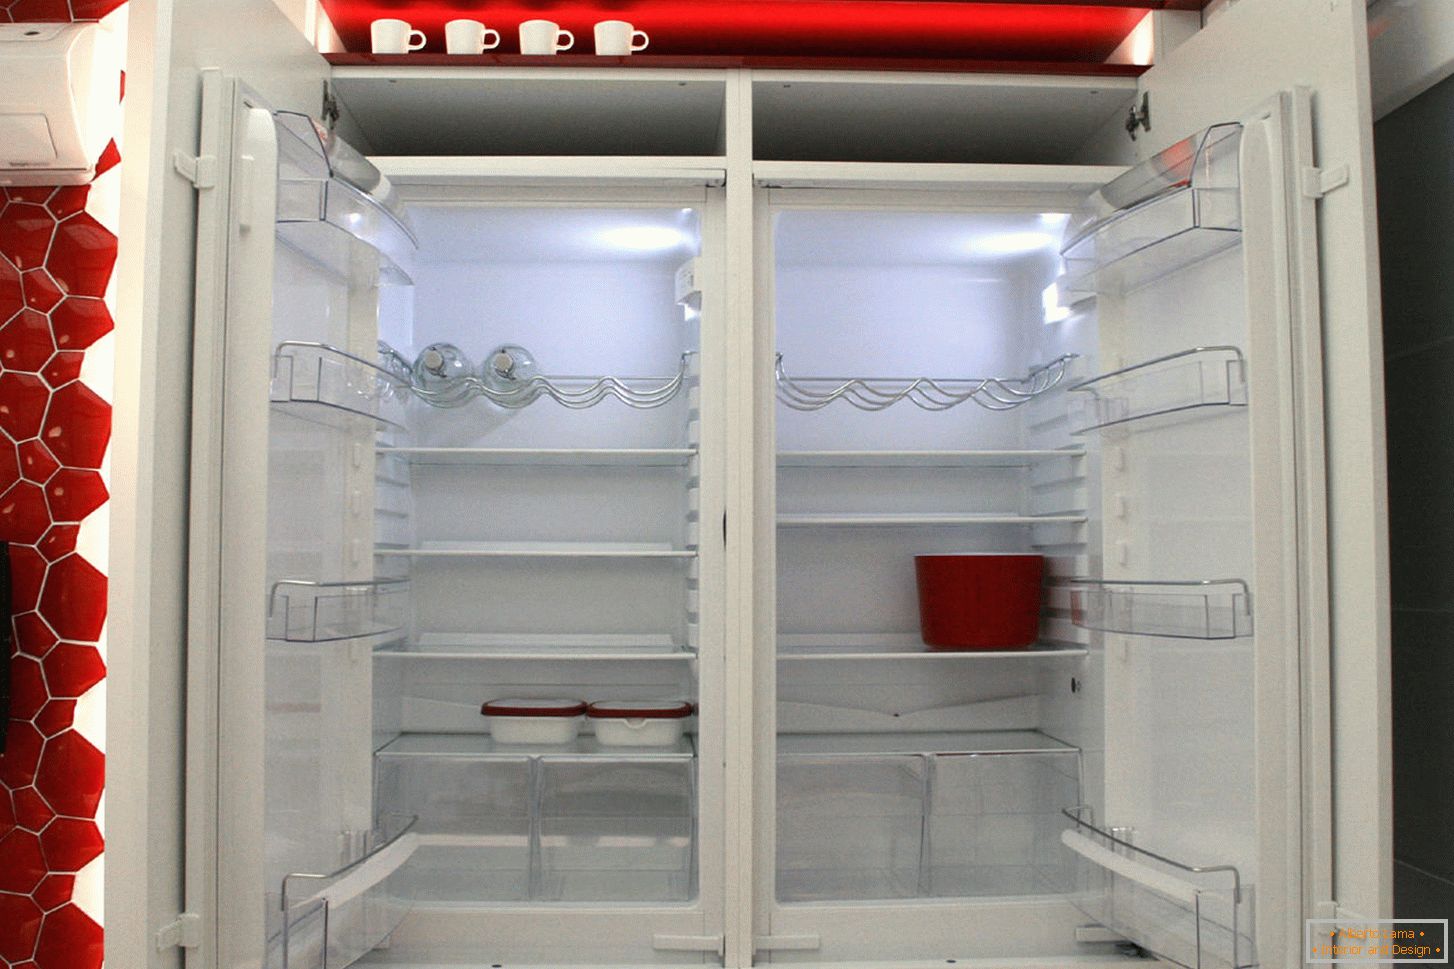 Moderná chladnička v interiéri kuchyne